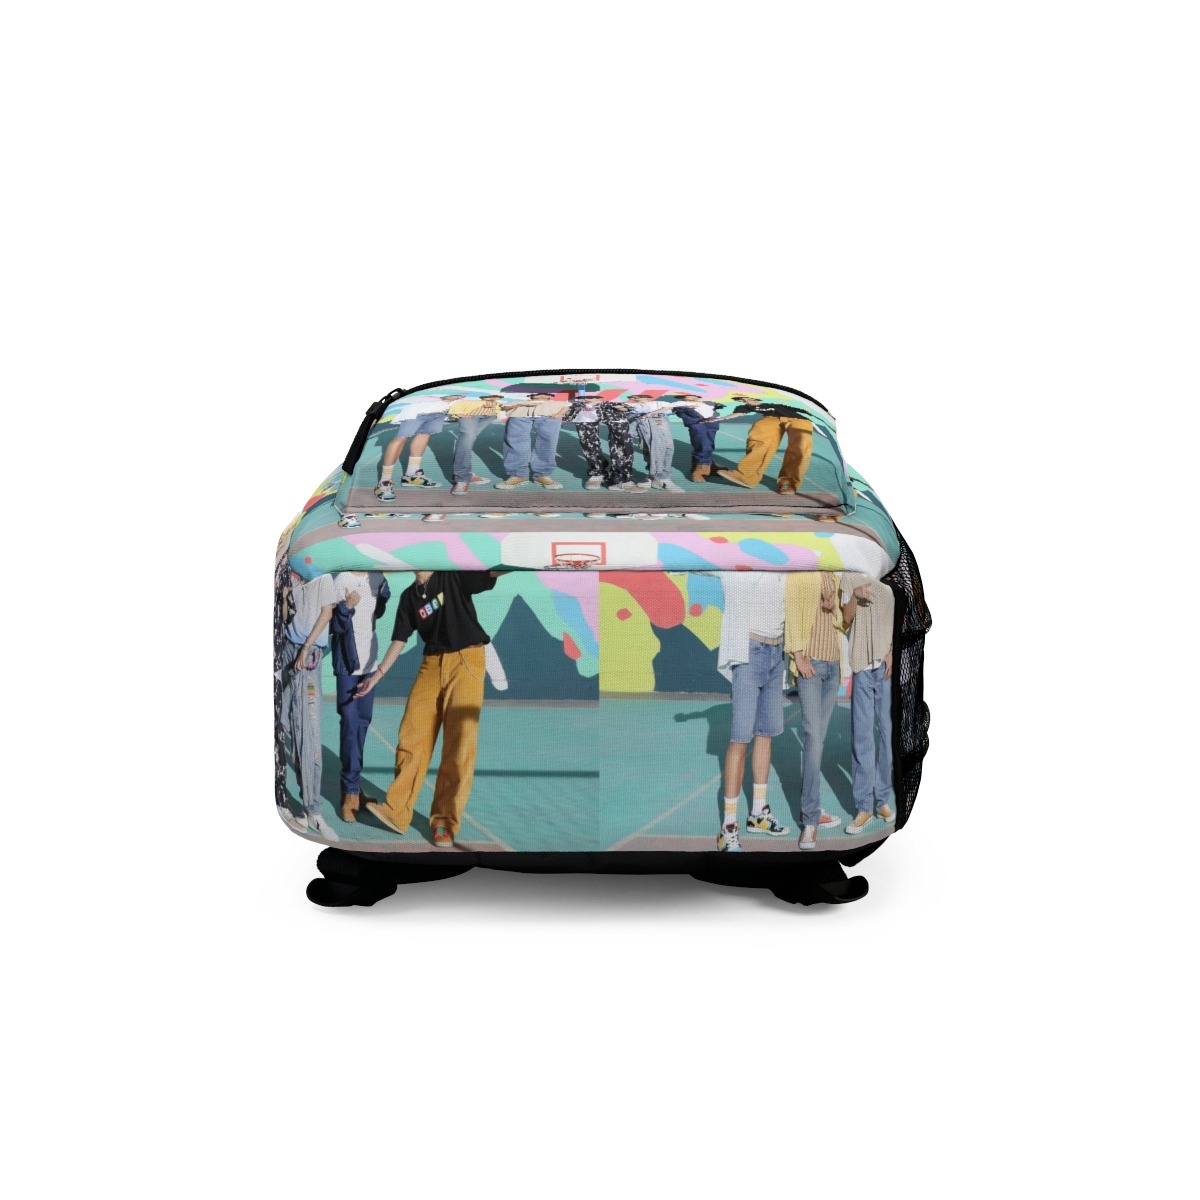 BTS Backpack – K Stuff Shop